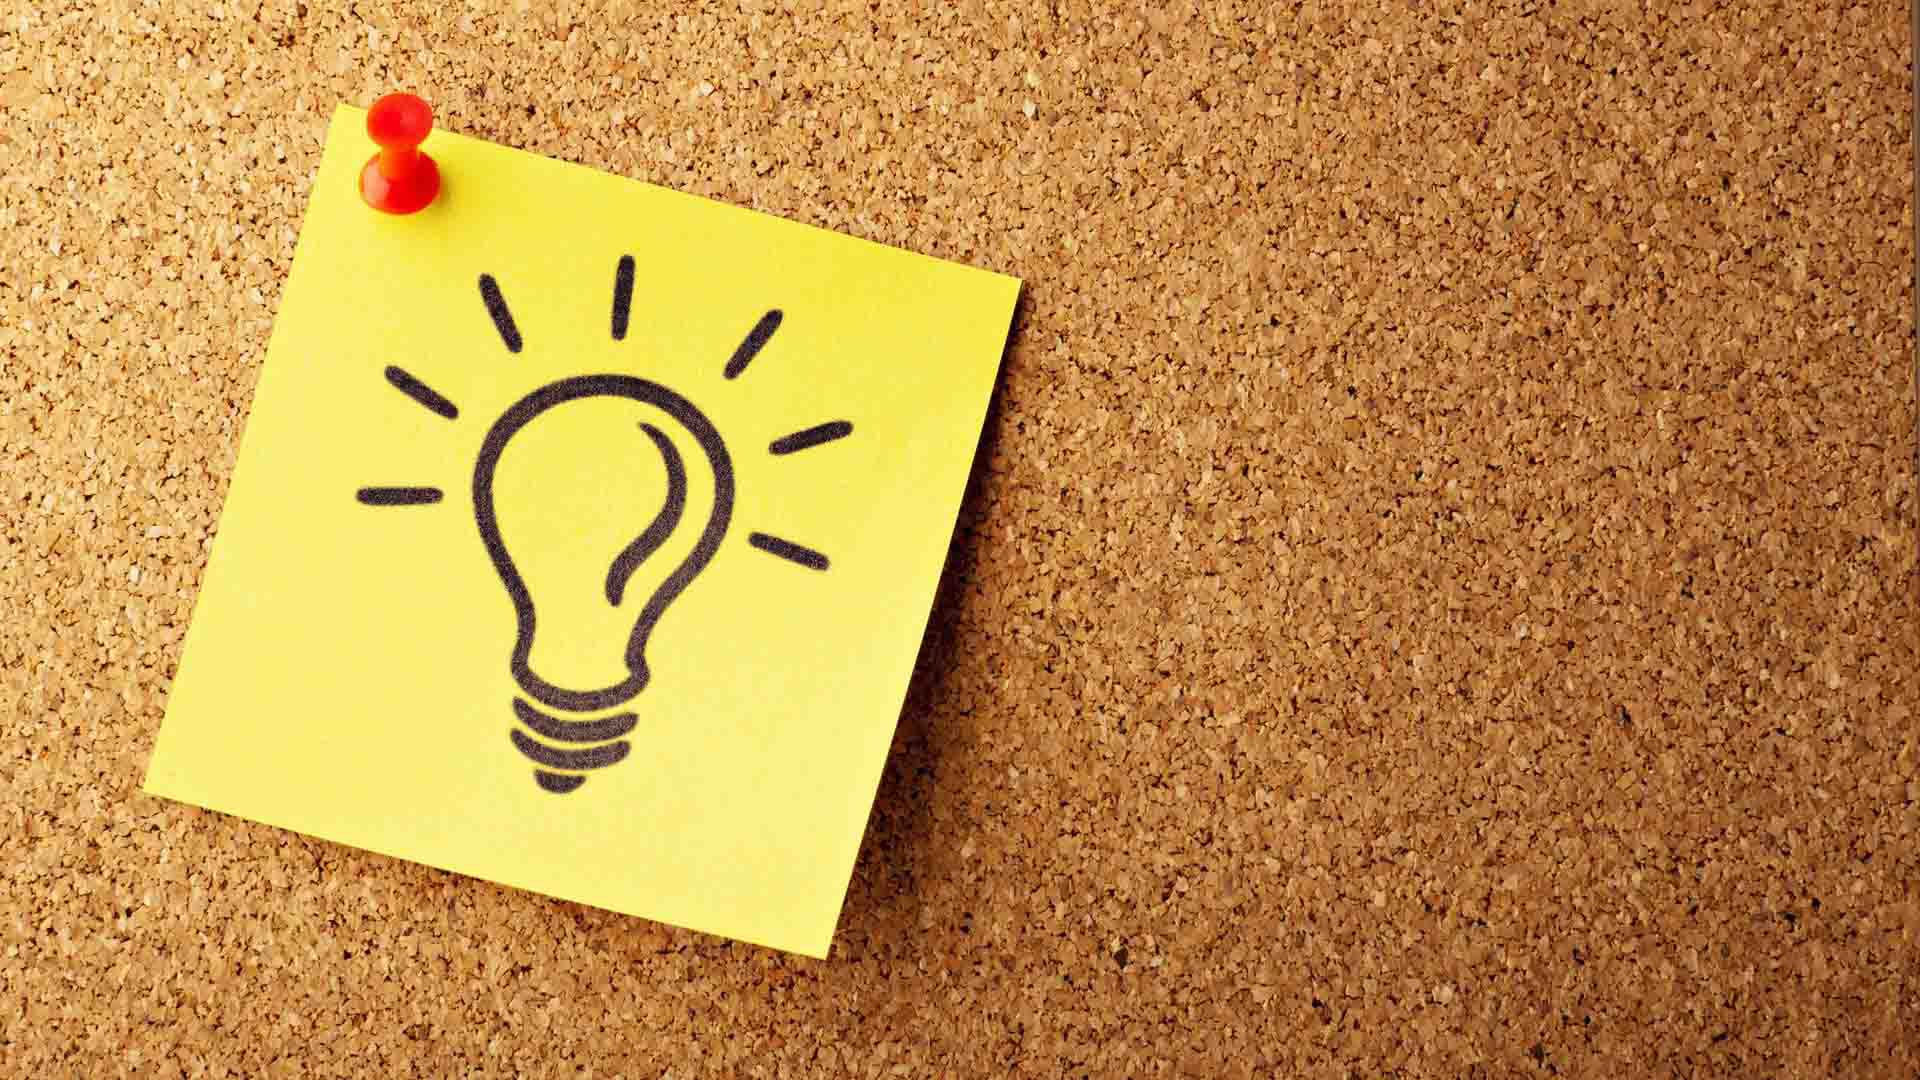 idea generation - post-it note with lightbulb drawn on it on cork ideas board